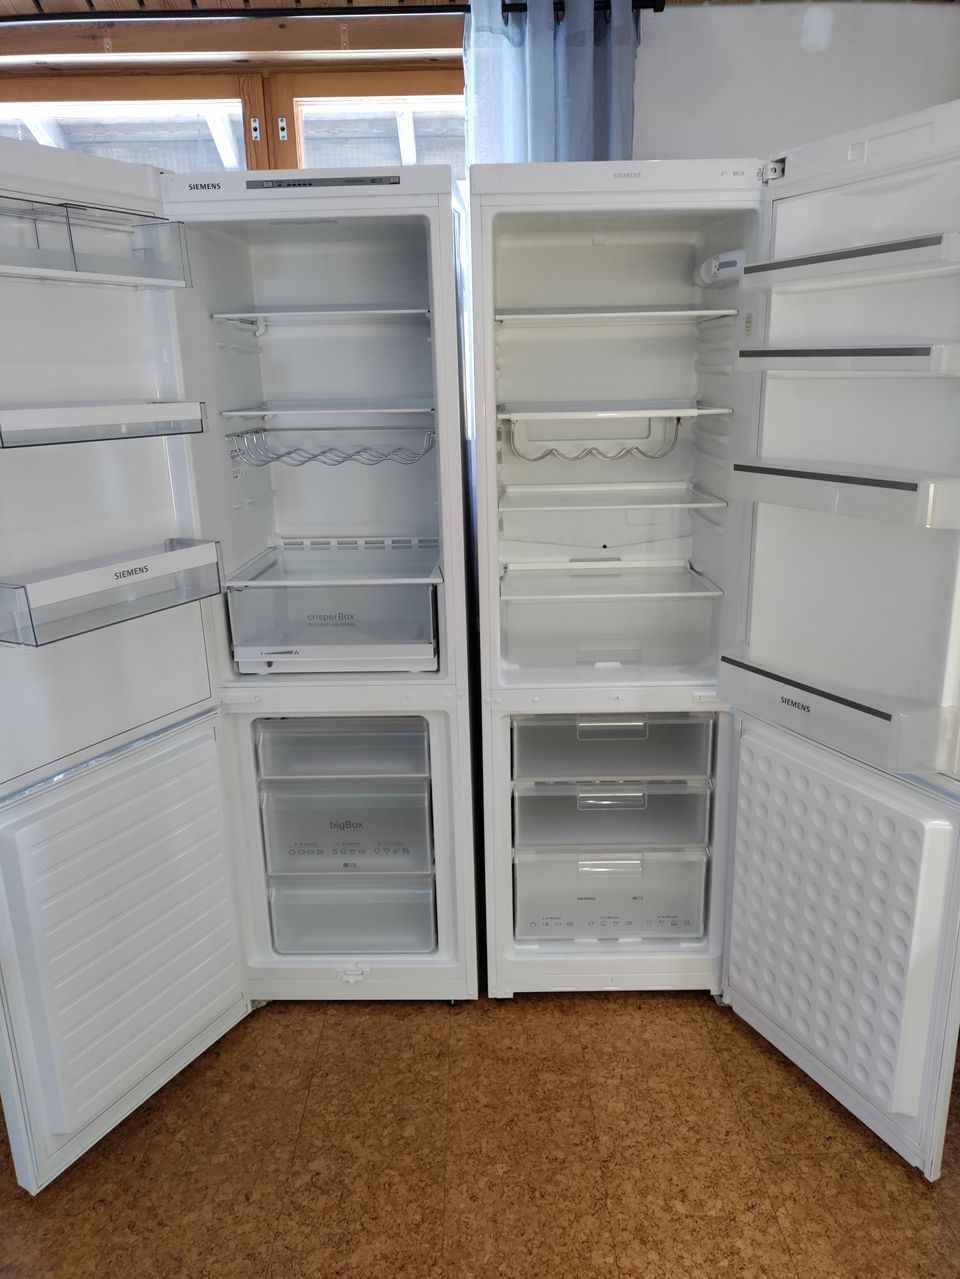 2 kpl Siemens jääkaappi-pakastin - MOLEMMAT VARATTU 2.5. asti